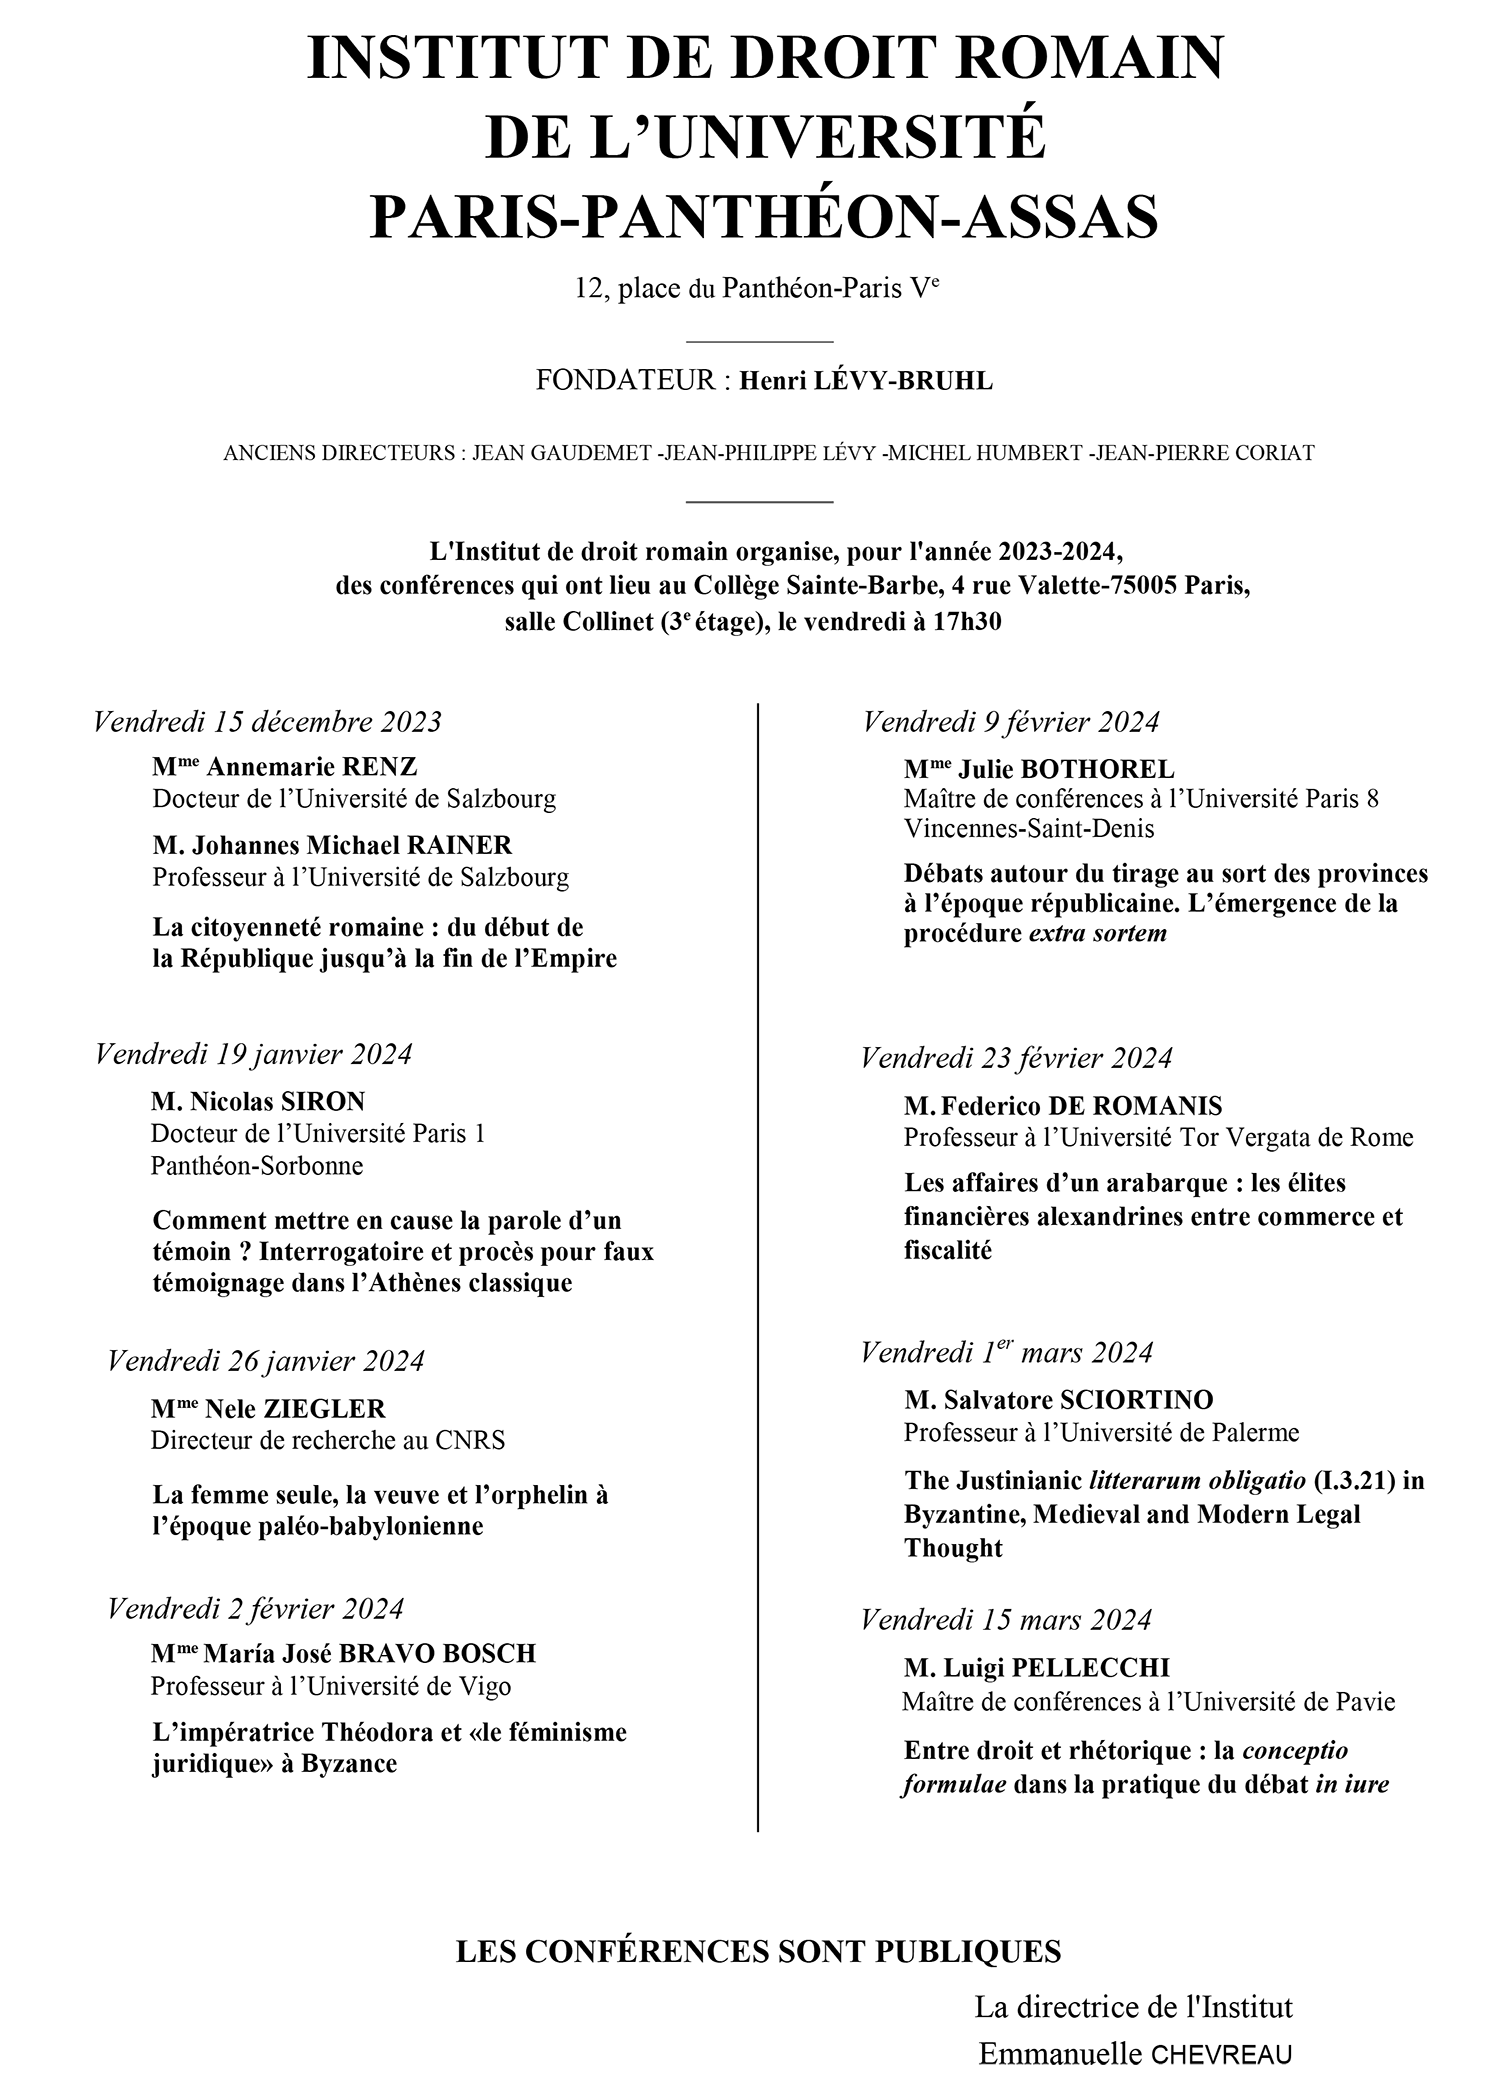 Cycle de conférences 2023-2024 de l'Institut de droit romain